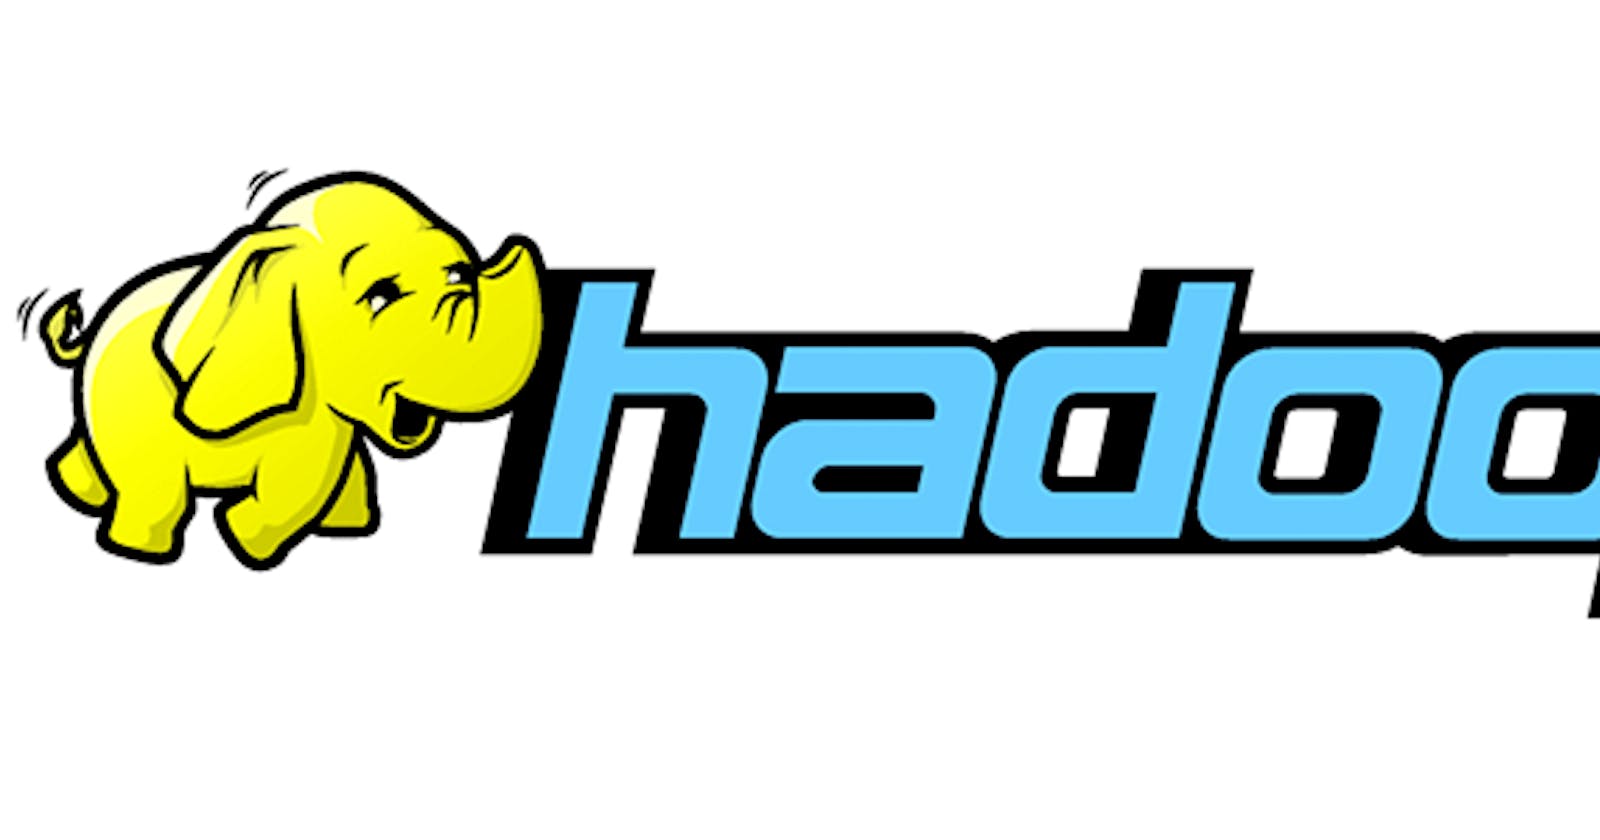 Hadoop Introduction